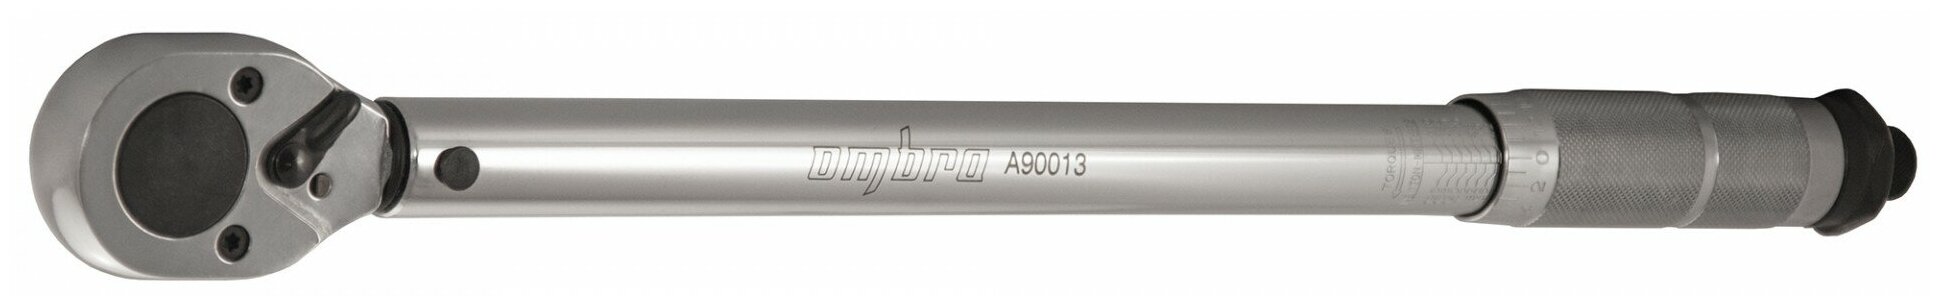 Динамометрический ключ Ombra A90013, 1/2"DR, 42-210 Нм